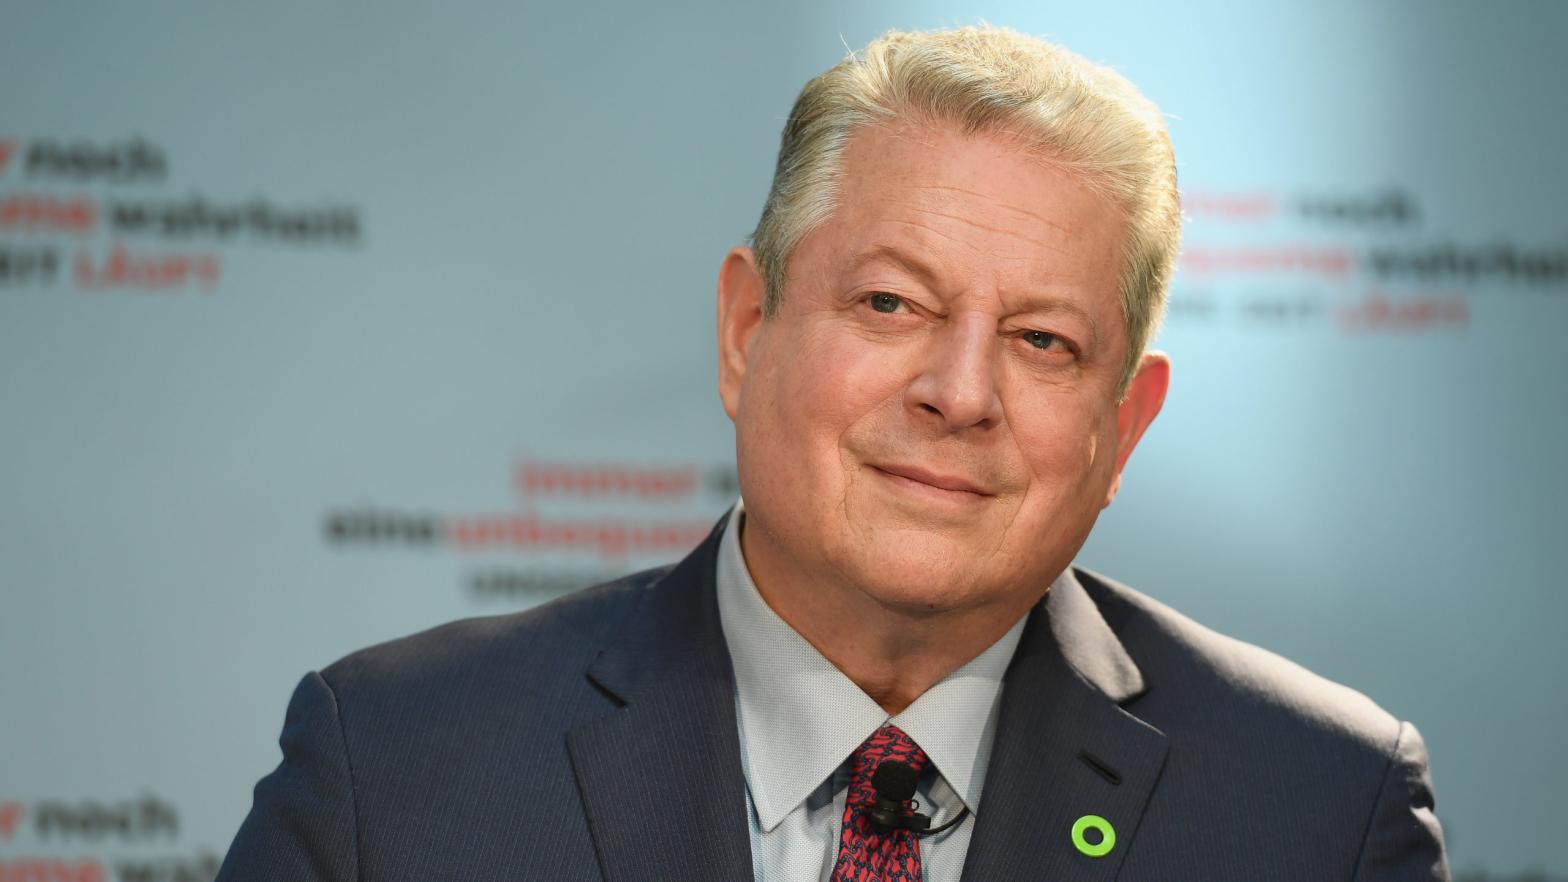 Al Gore (Photo: Matthias Nareyek, Getty Images)